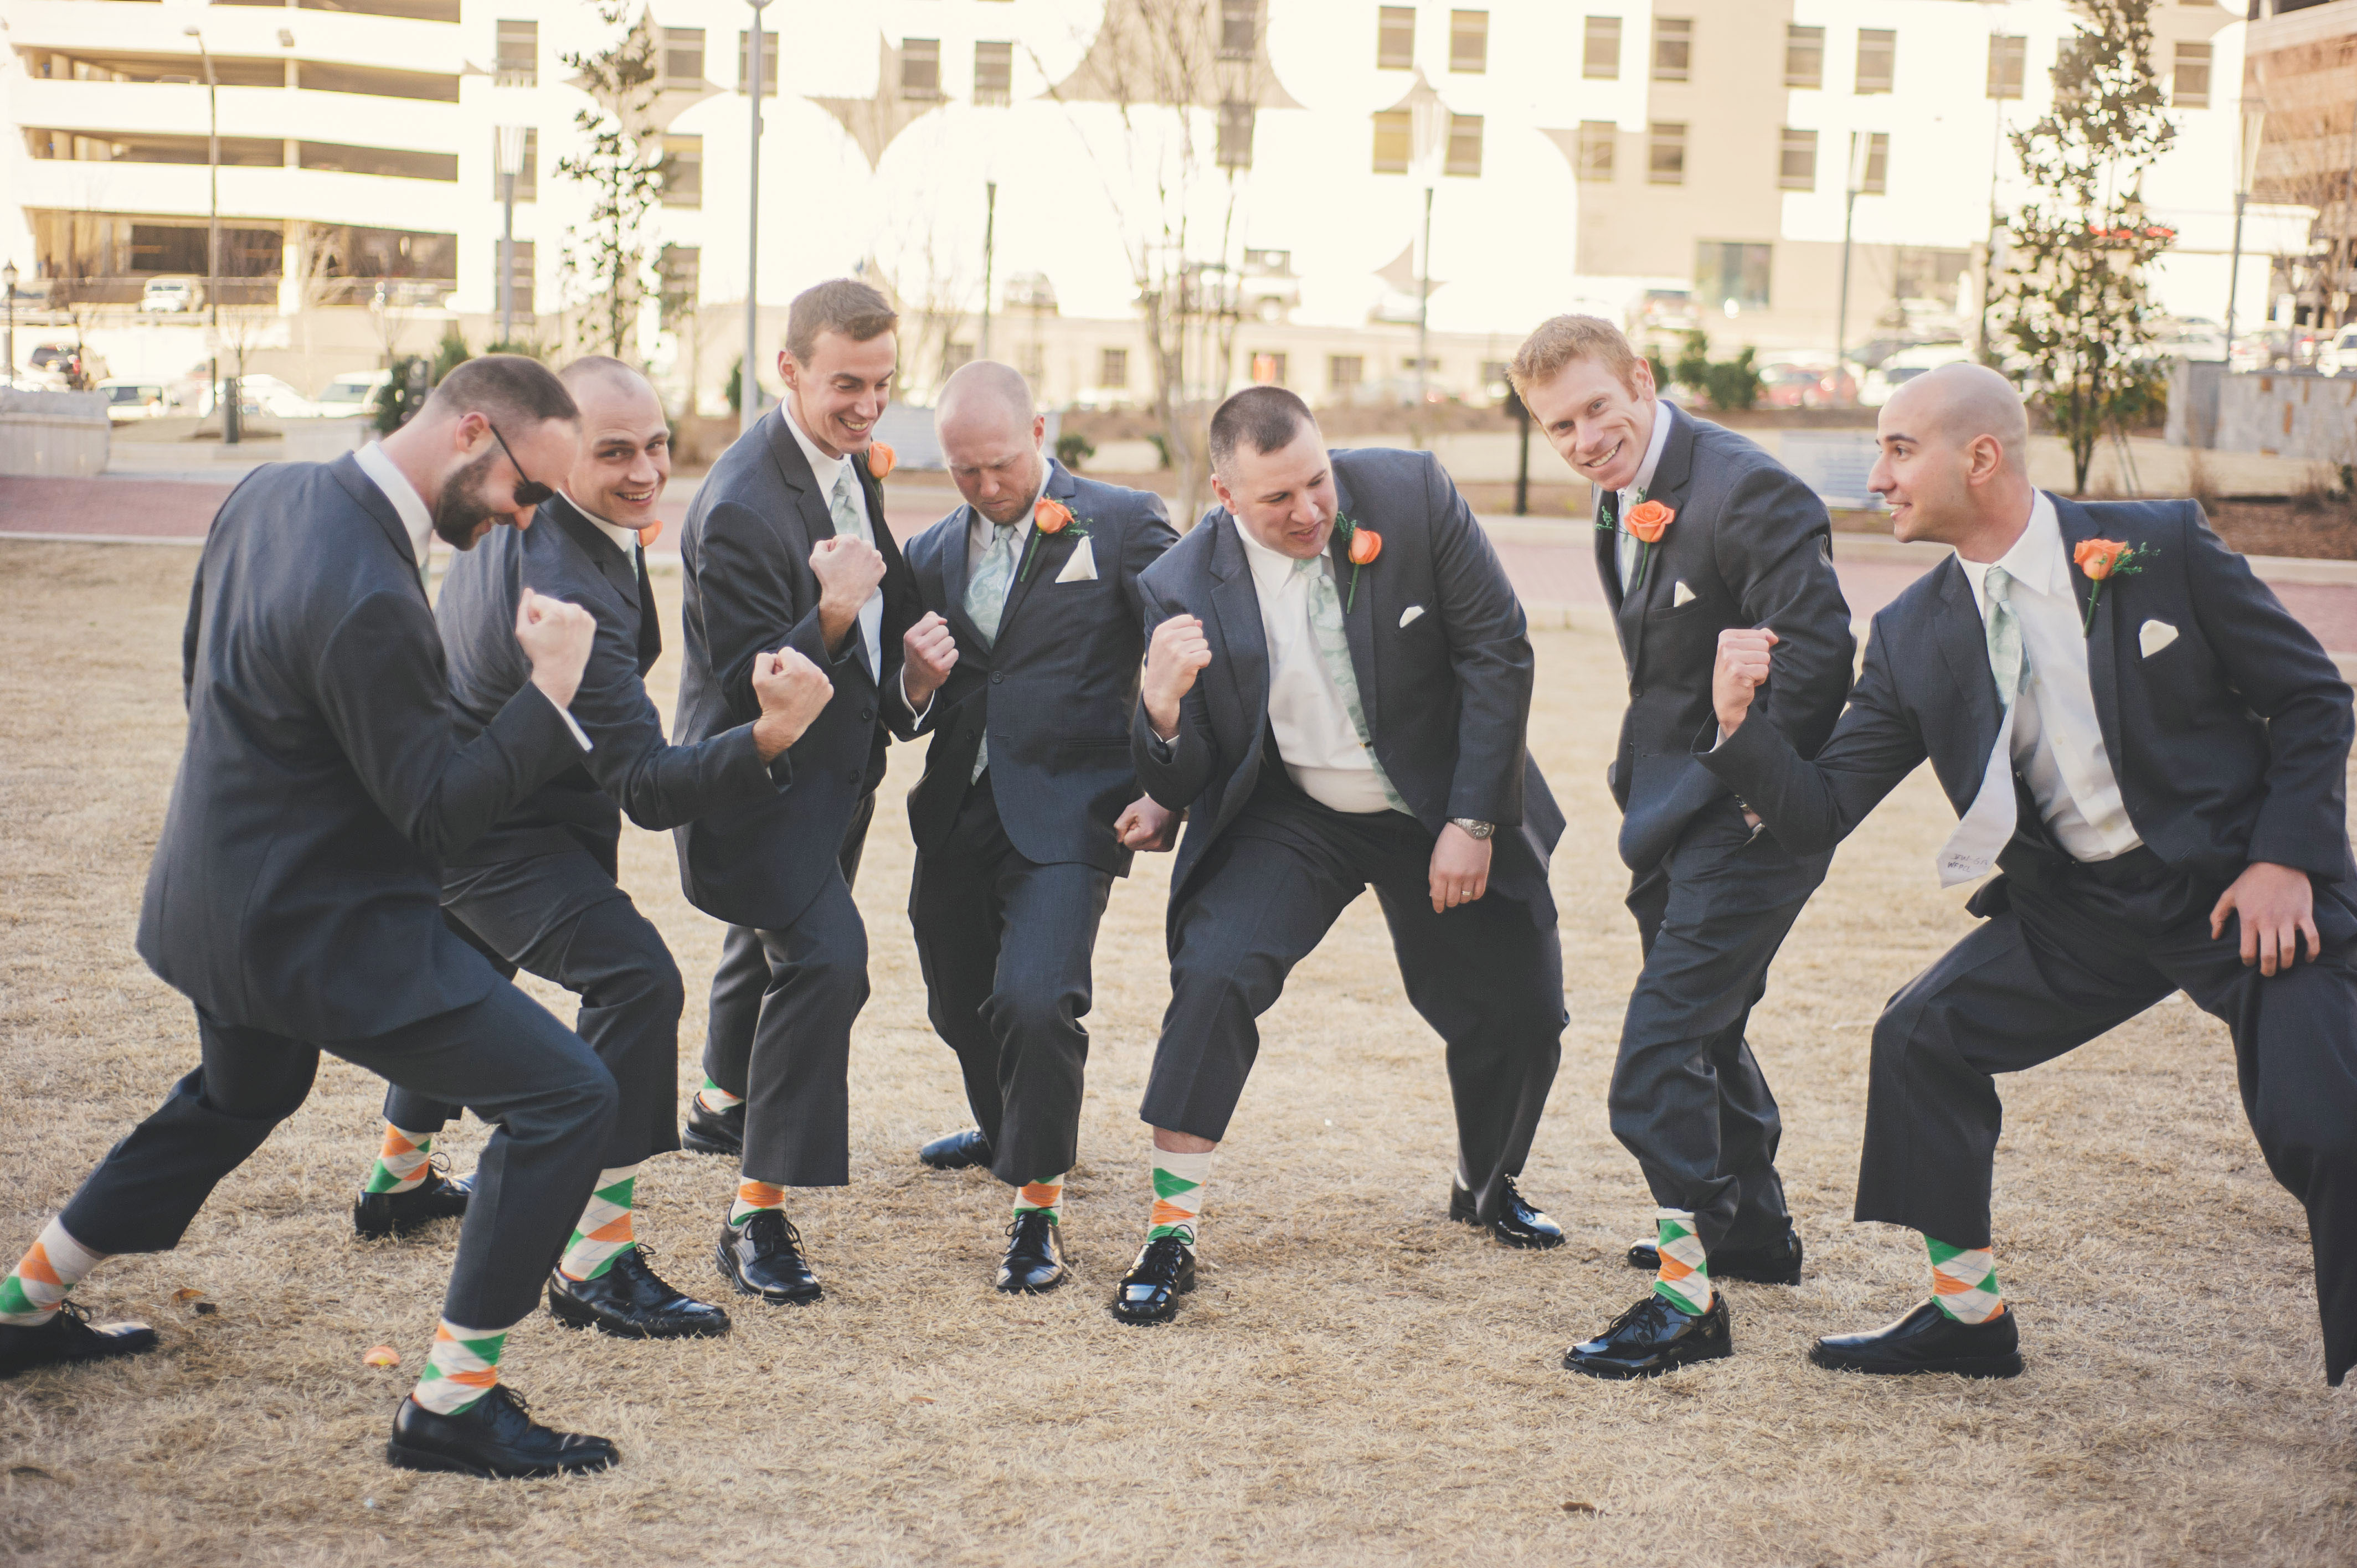  groomsmen_green_orange_socks.jpg